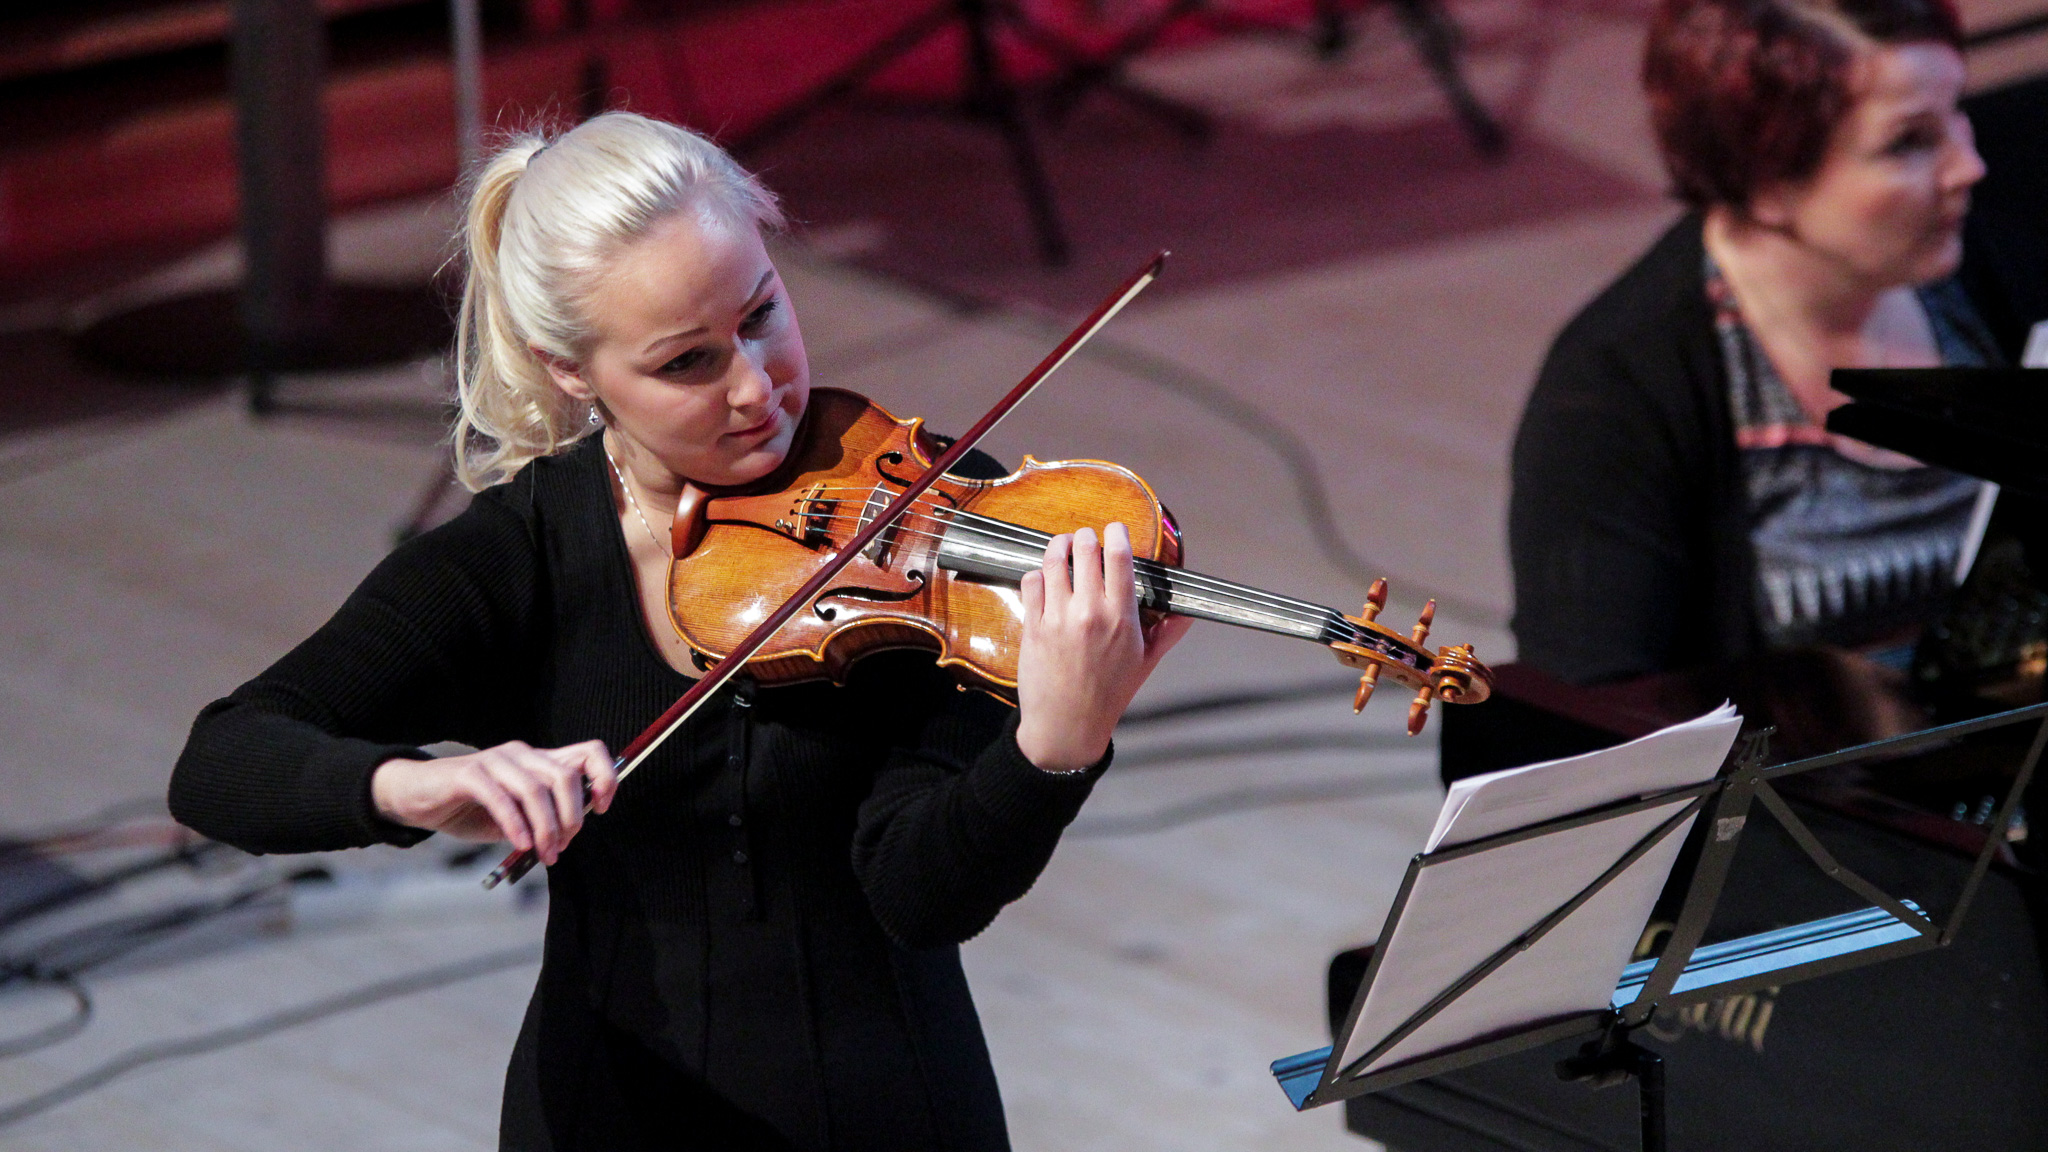 Kuvassa on nuori vaaleatukkainen nainen soittamassa viulua.  Kuvassa näkyy myös toinen soittaja istumassa.  